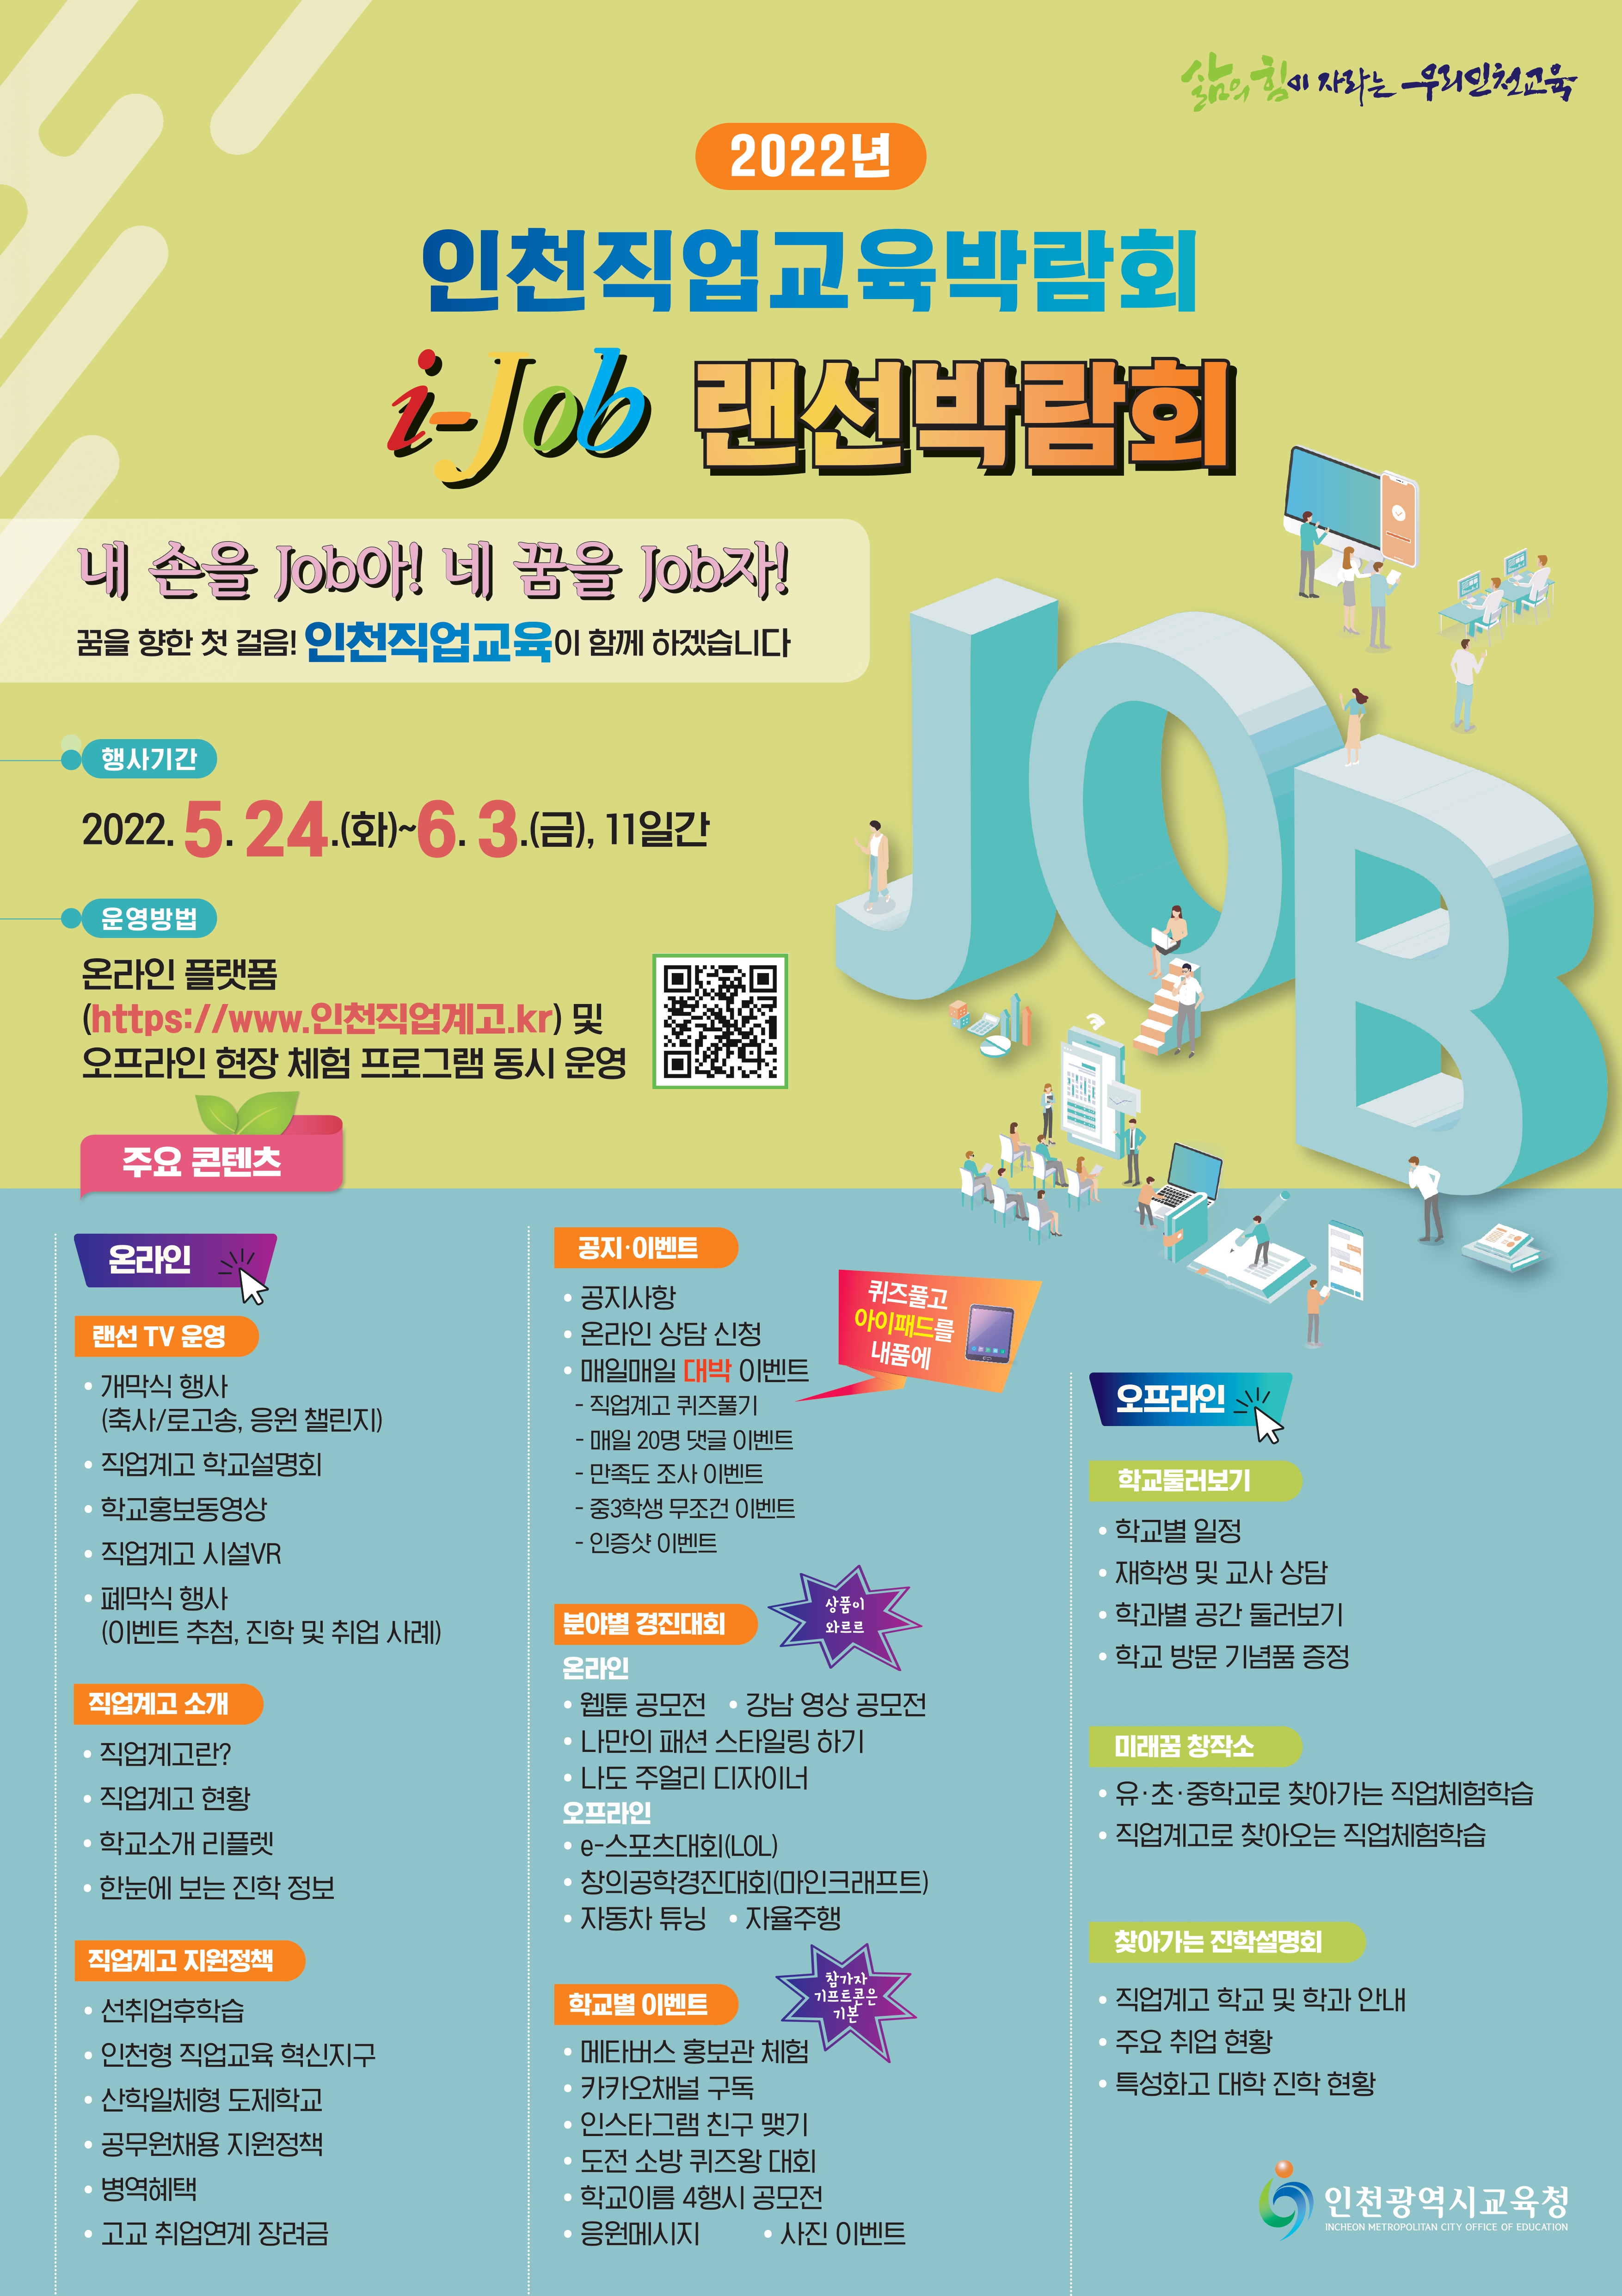 2022년 인천교육직업교육박람회 ‘i-job 랜선 박람회’